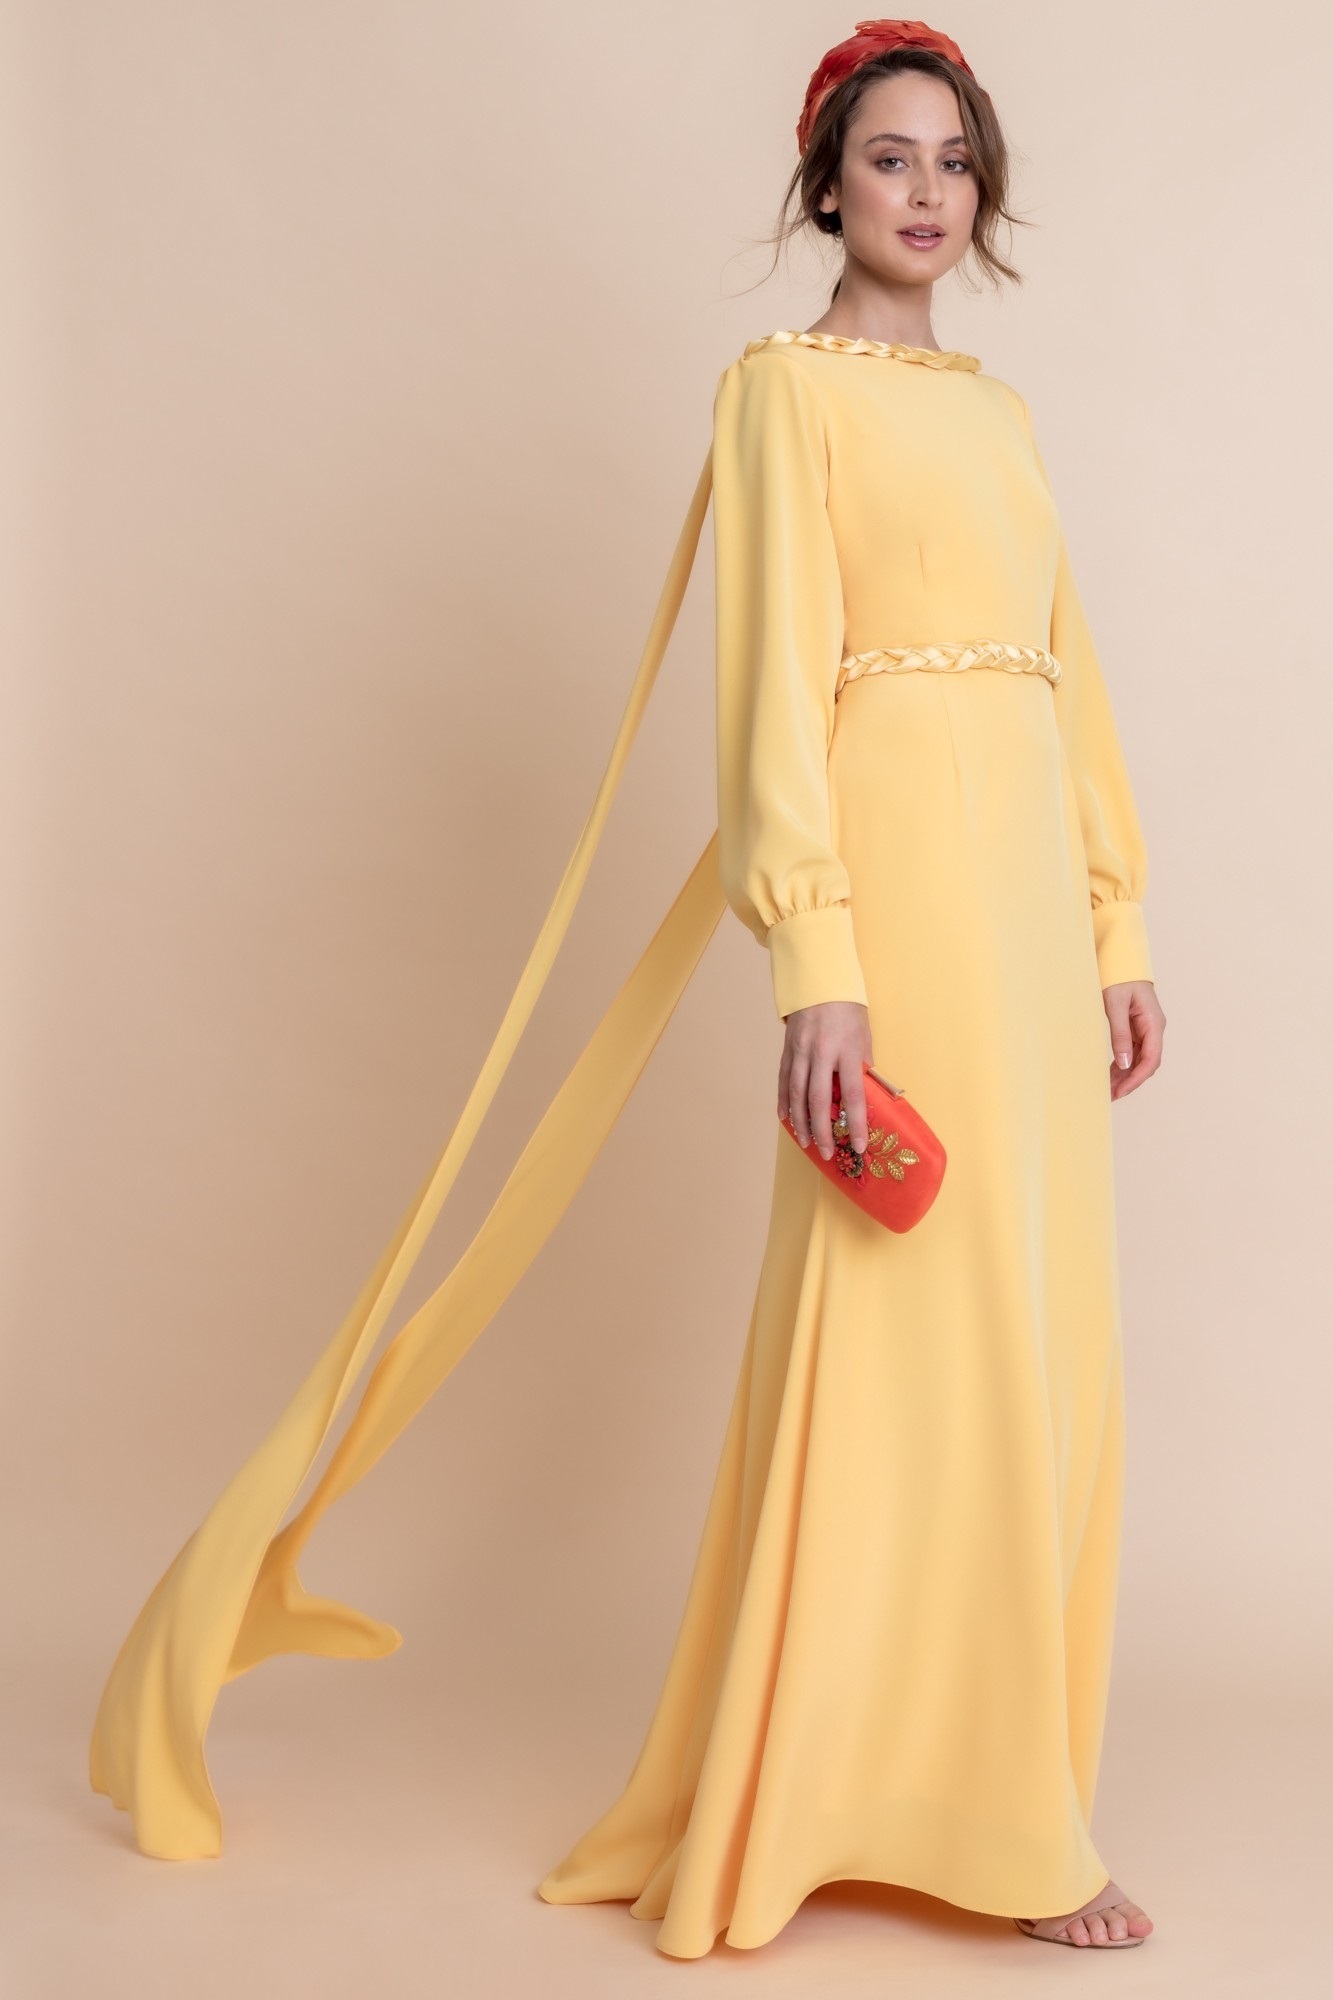 Los 13 vestidos madrina espectaculares para bodas 2023, de El Corte Inglés a Pronovias | Moda